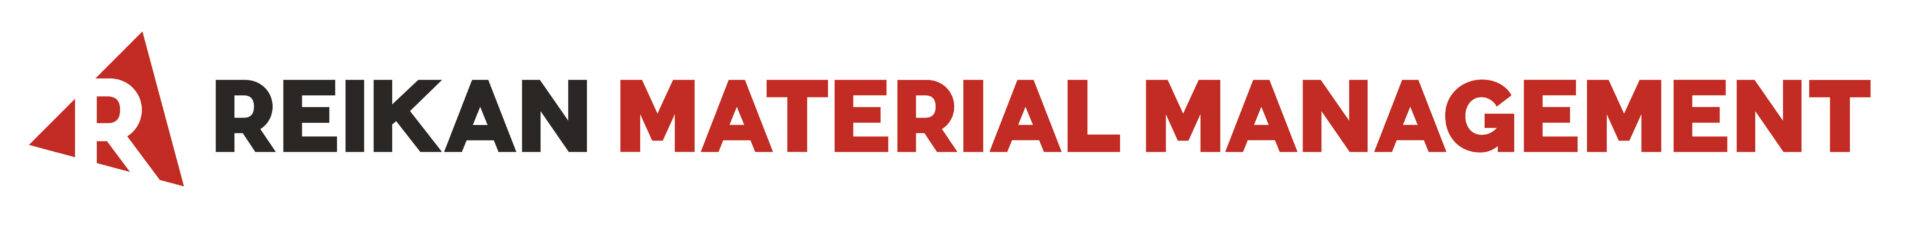 Reikan Material Management Logo